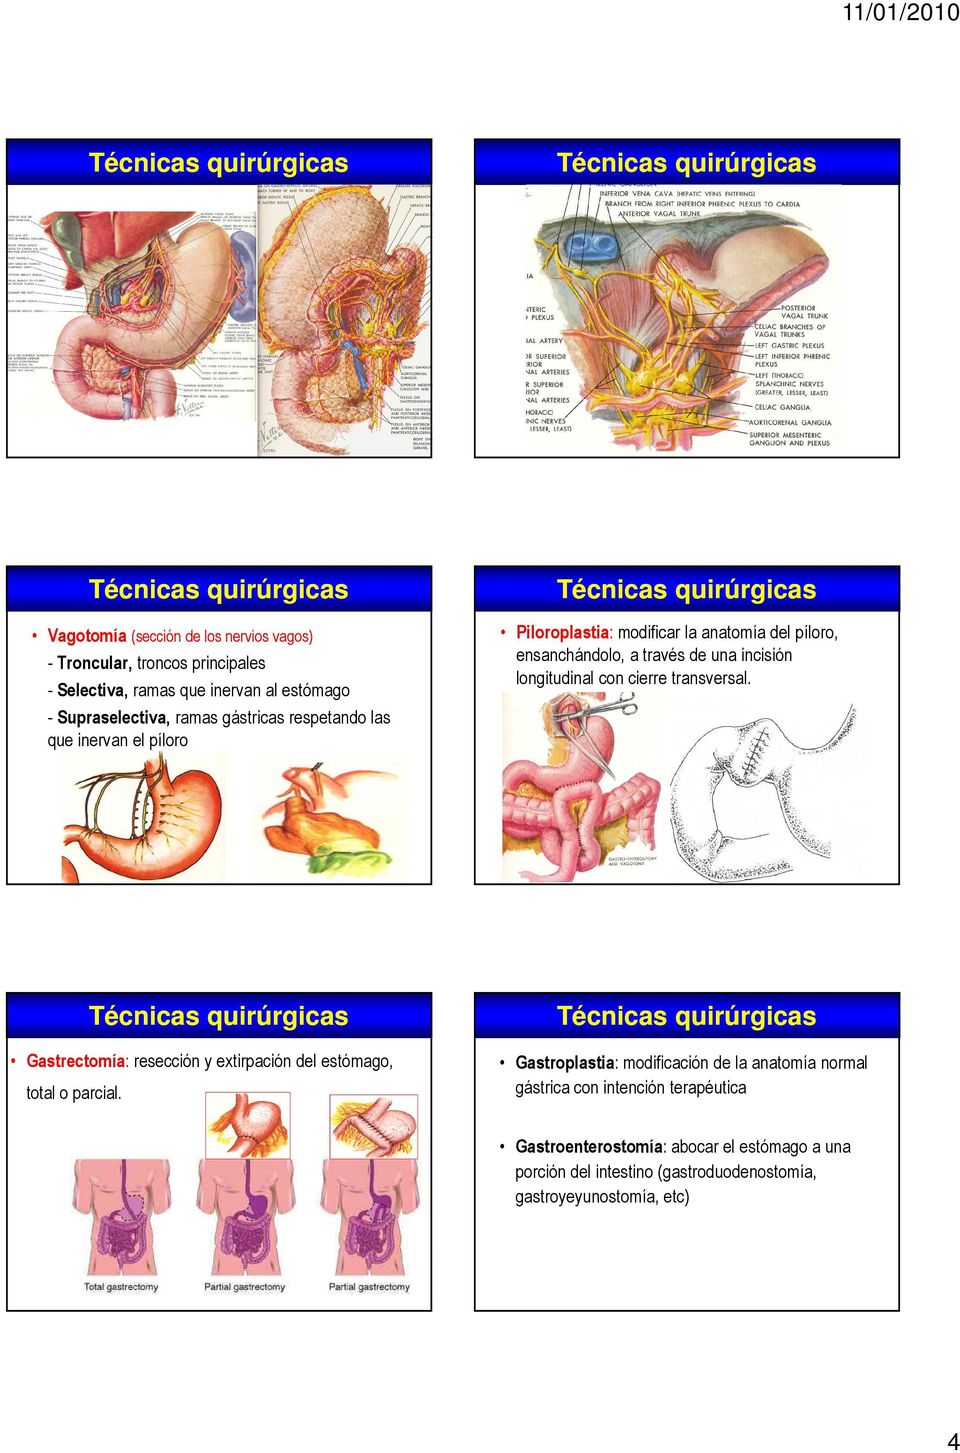 longitudinal con cierre transversal. Gastrectomía: resección y extirpación del estómago, total o parcial.